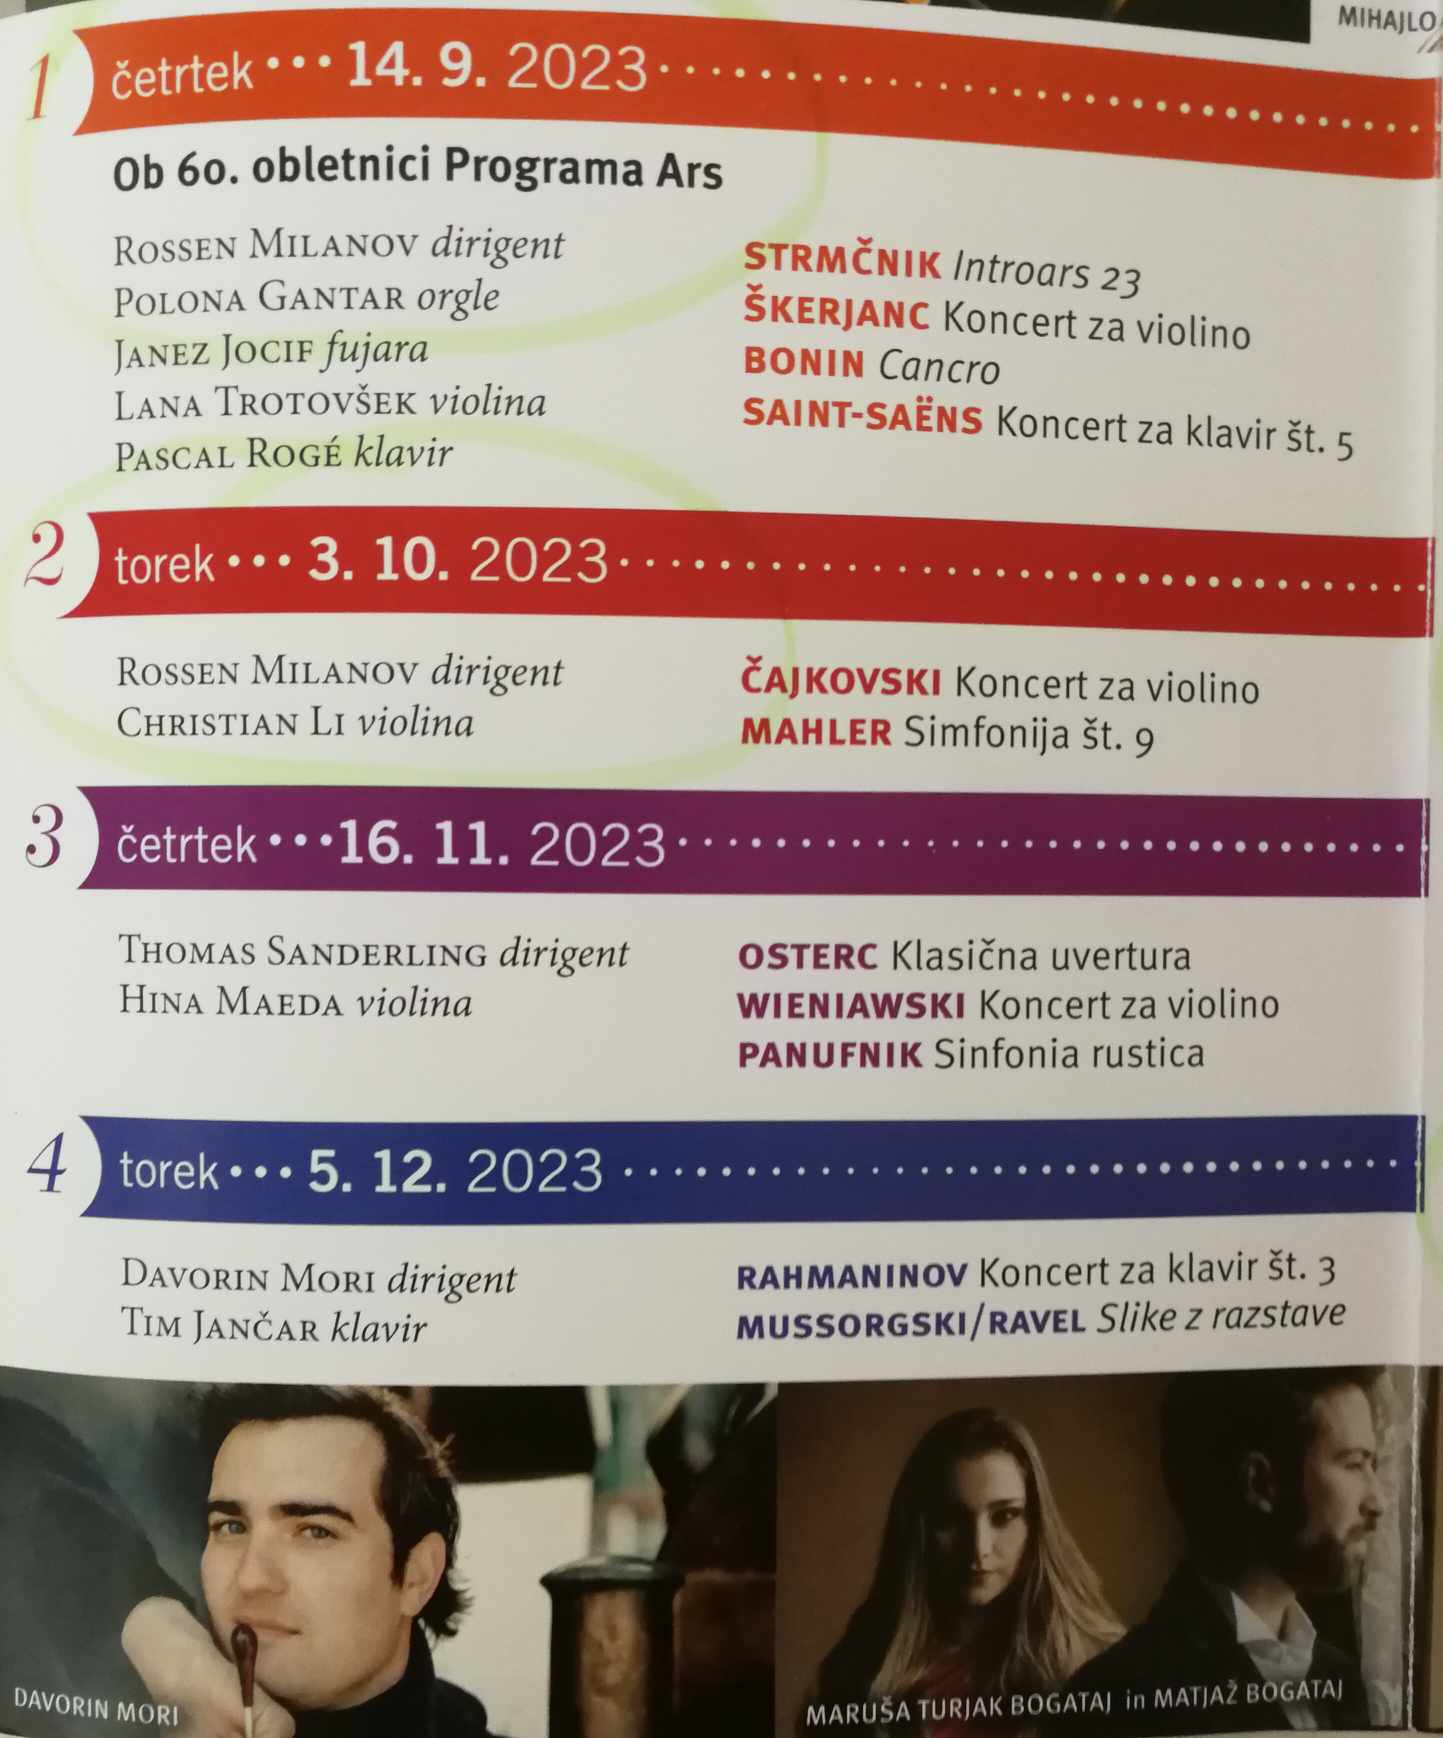 Концерти под диригентството на маестро Росен Миланов в Словения през сезон 2023/24 г.